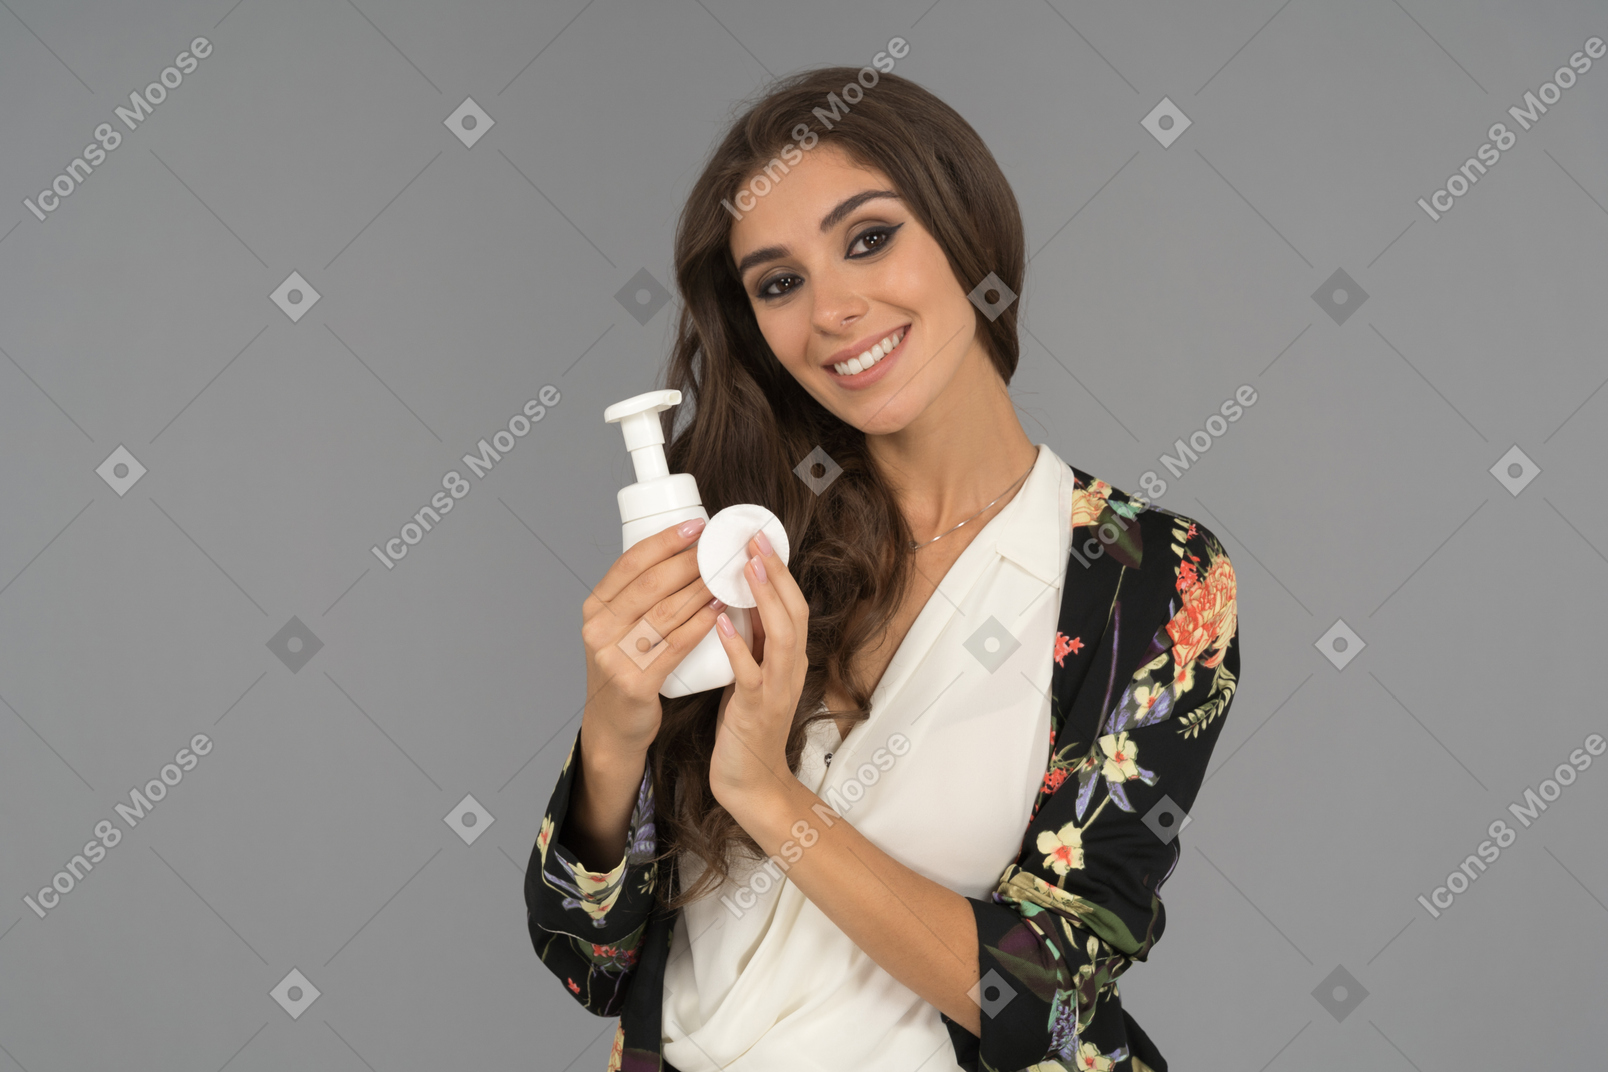 Una bella donna con un sorriso radioso che pubblicizza un nuovo prodotto di bellezza